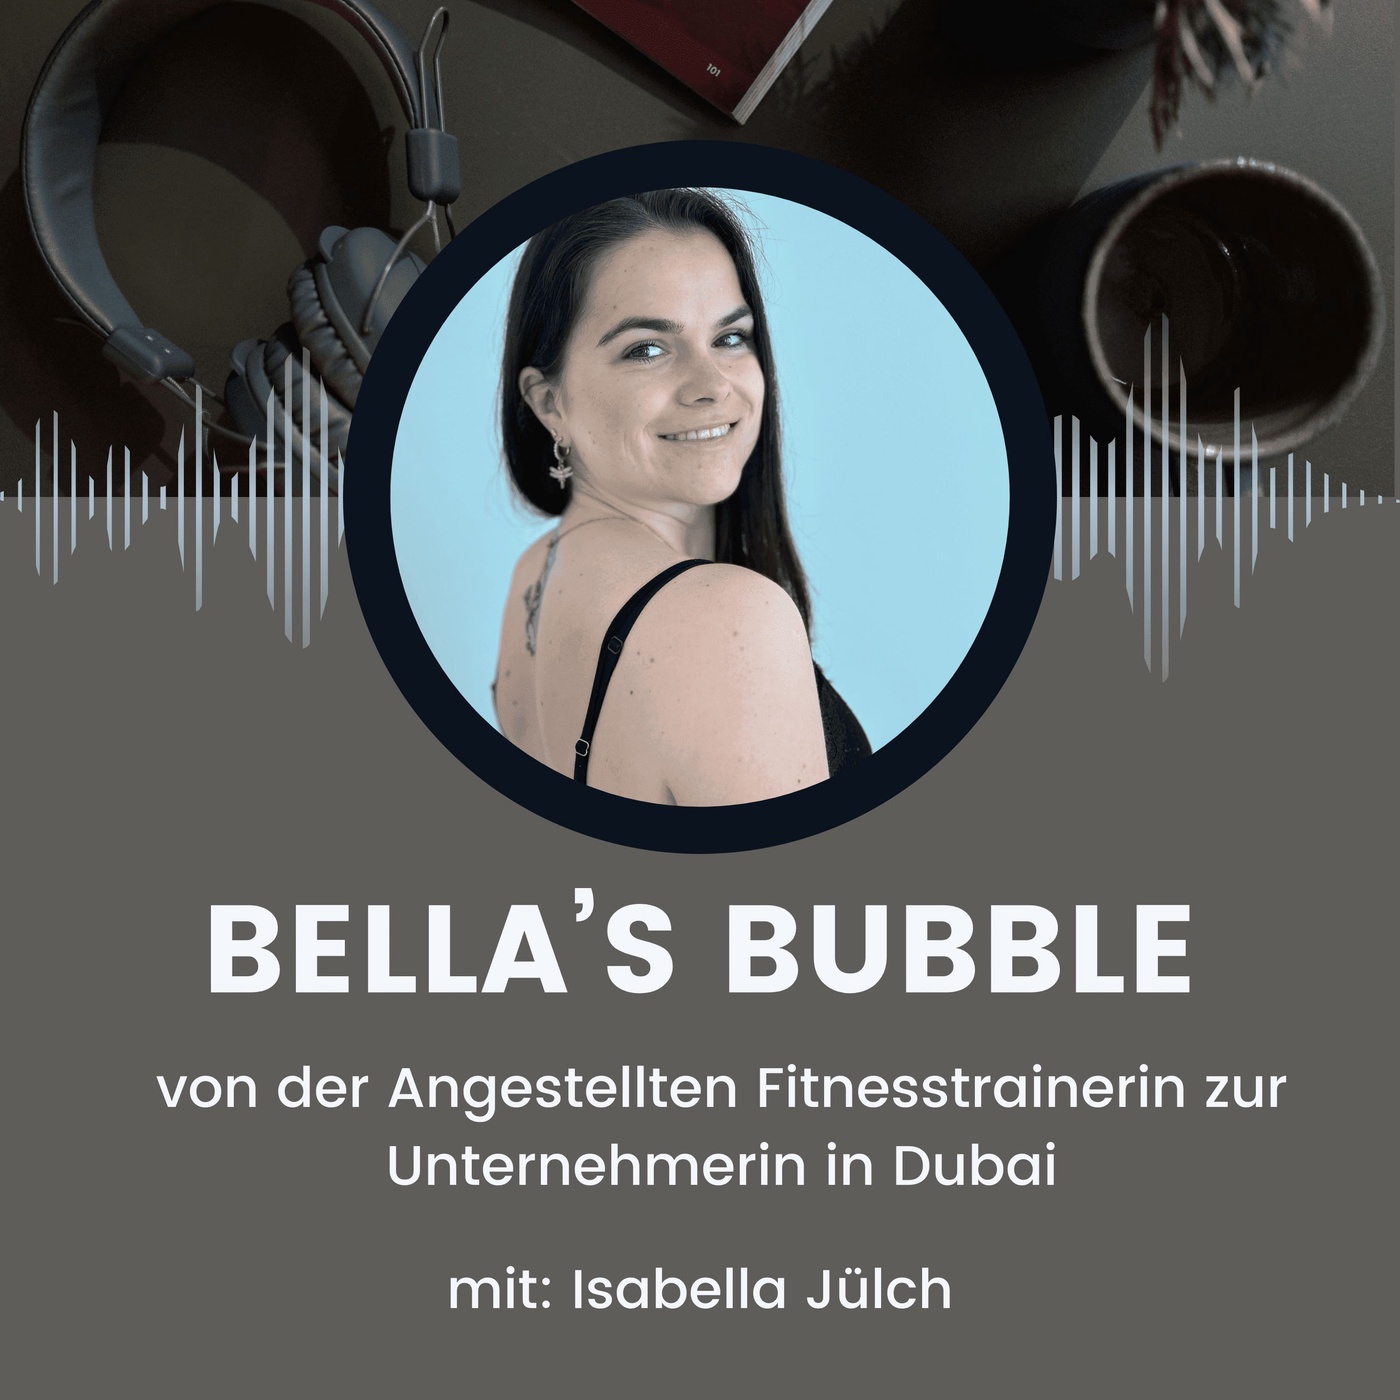 Bella‘s Bubble